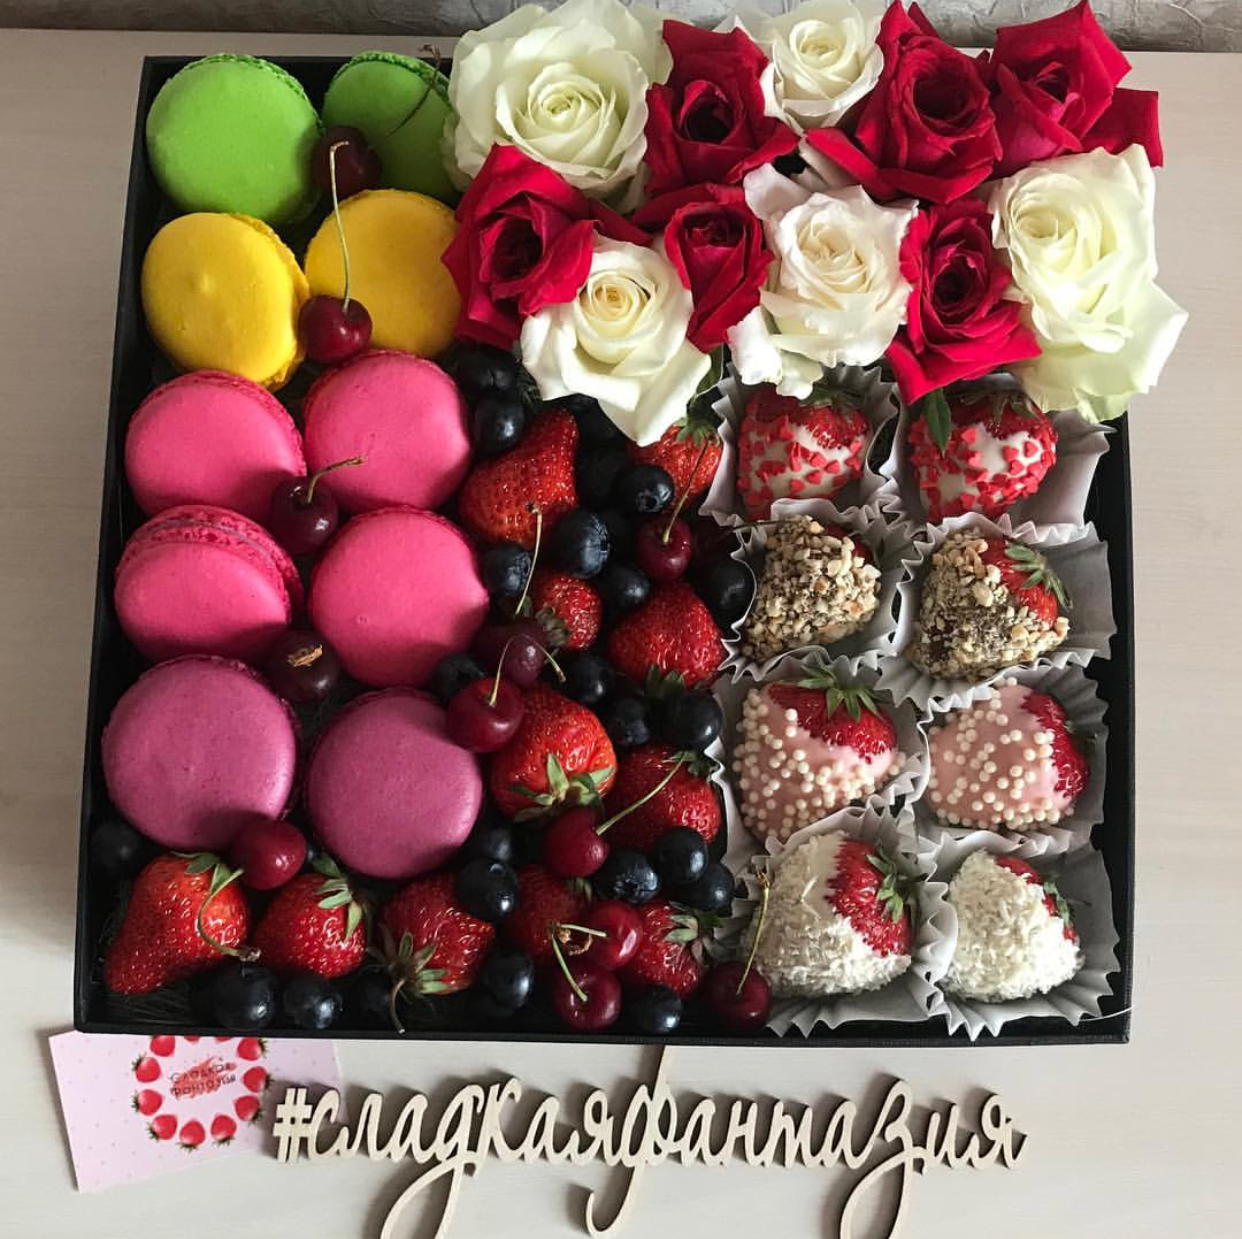 Клубника в шоколаде. Клубника в шоколаде в коробке. Коробка с фруктами и конфетами. Клубника в шоколаде и цветы в коробке.